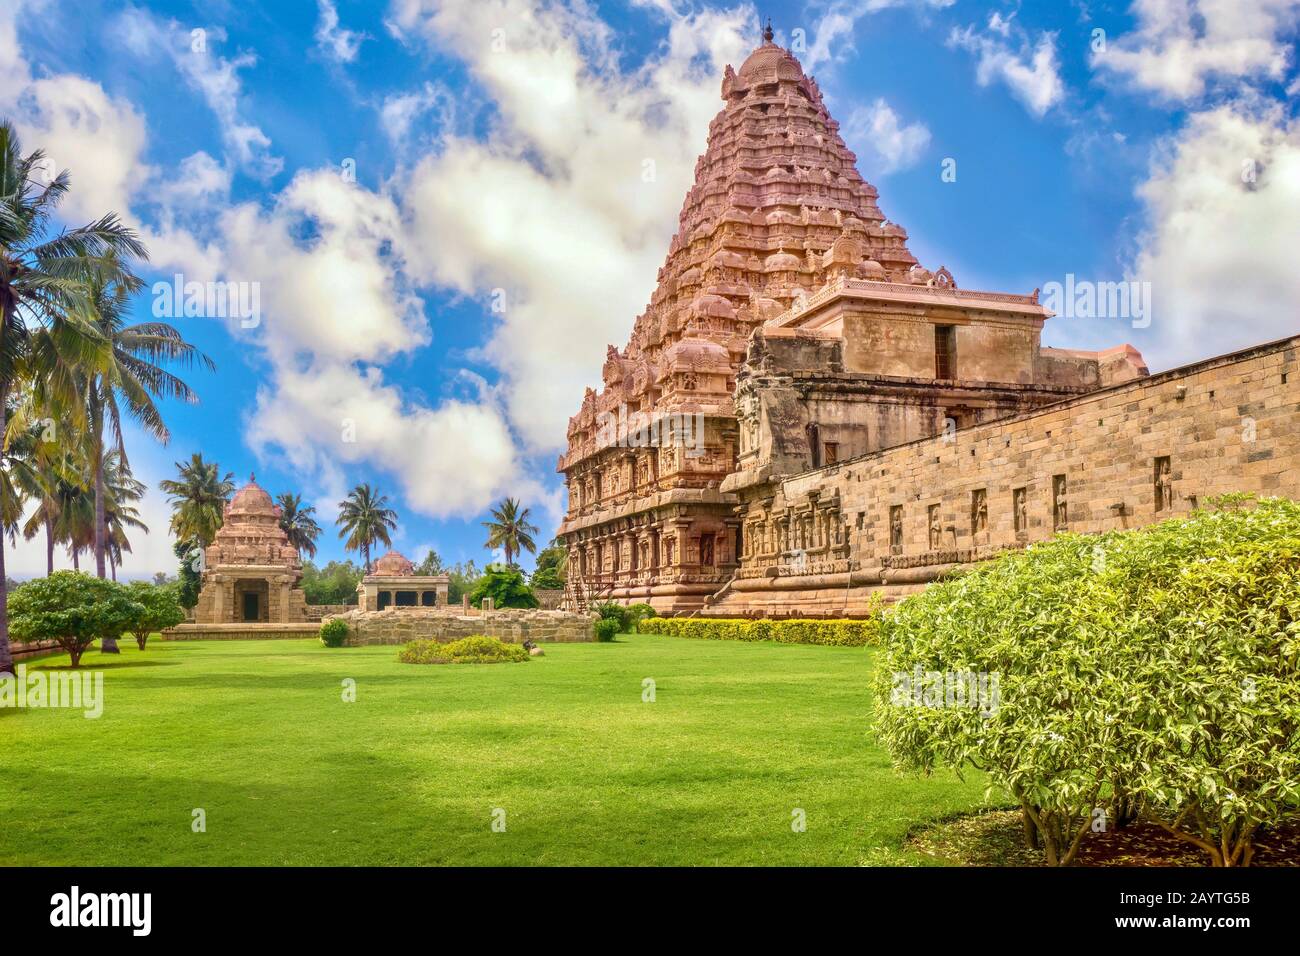 Der große und schöne Gangaikonda Cholapuram Tempel, der Lord Shiva gewidmet ist, mit seinem tropischen Landschaftsgarten, in Tanjore, Tamil Nadu, Indien. Stockfoto